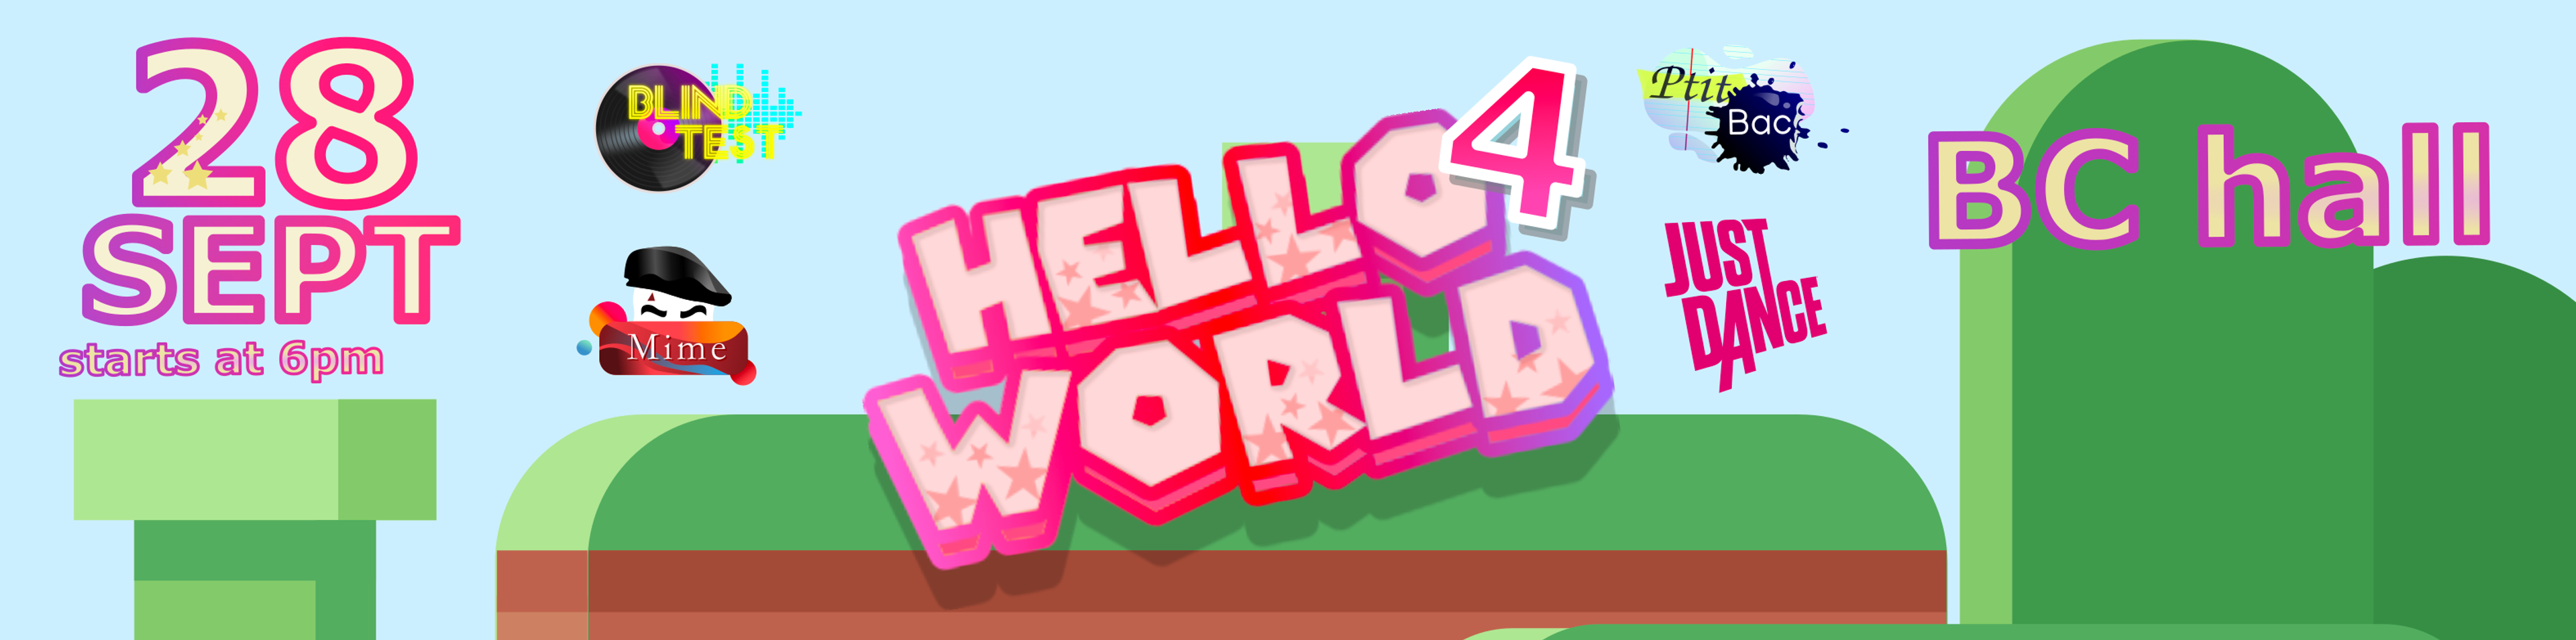 Hello World 4